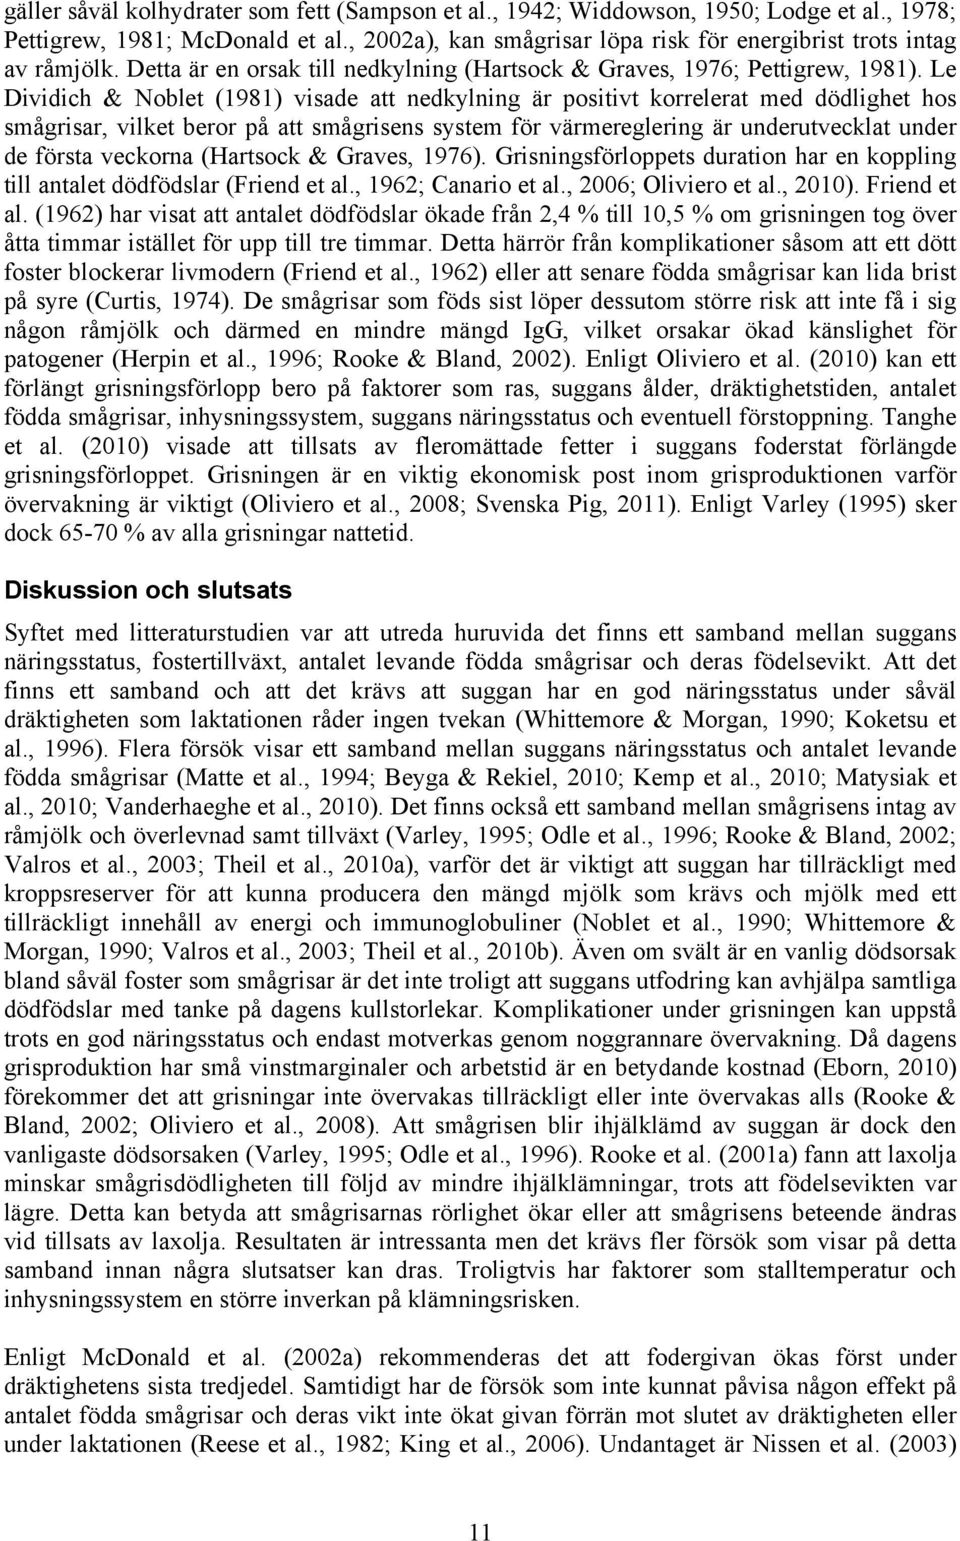 Le Dividich & Noblet (1981) visade att nedkylning är positivt korrelerat med dödlighet hos smågrisar, vilket beror på att smågrisens system för värmereglering är underutvecklat under de första